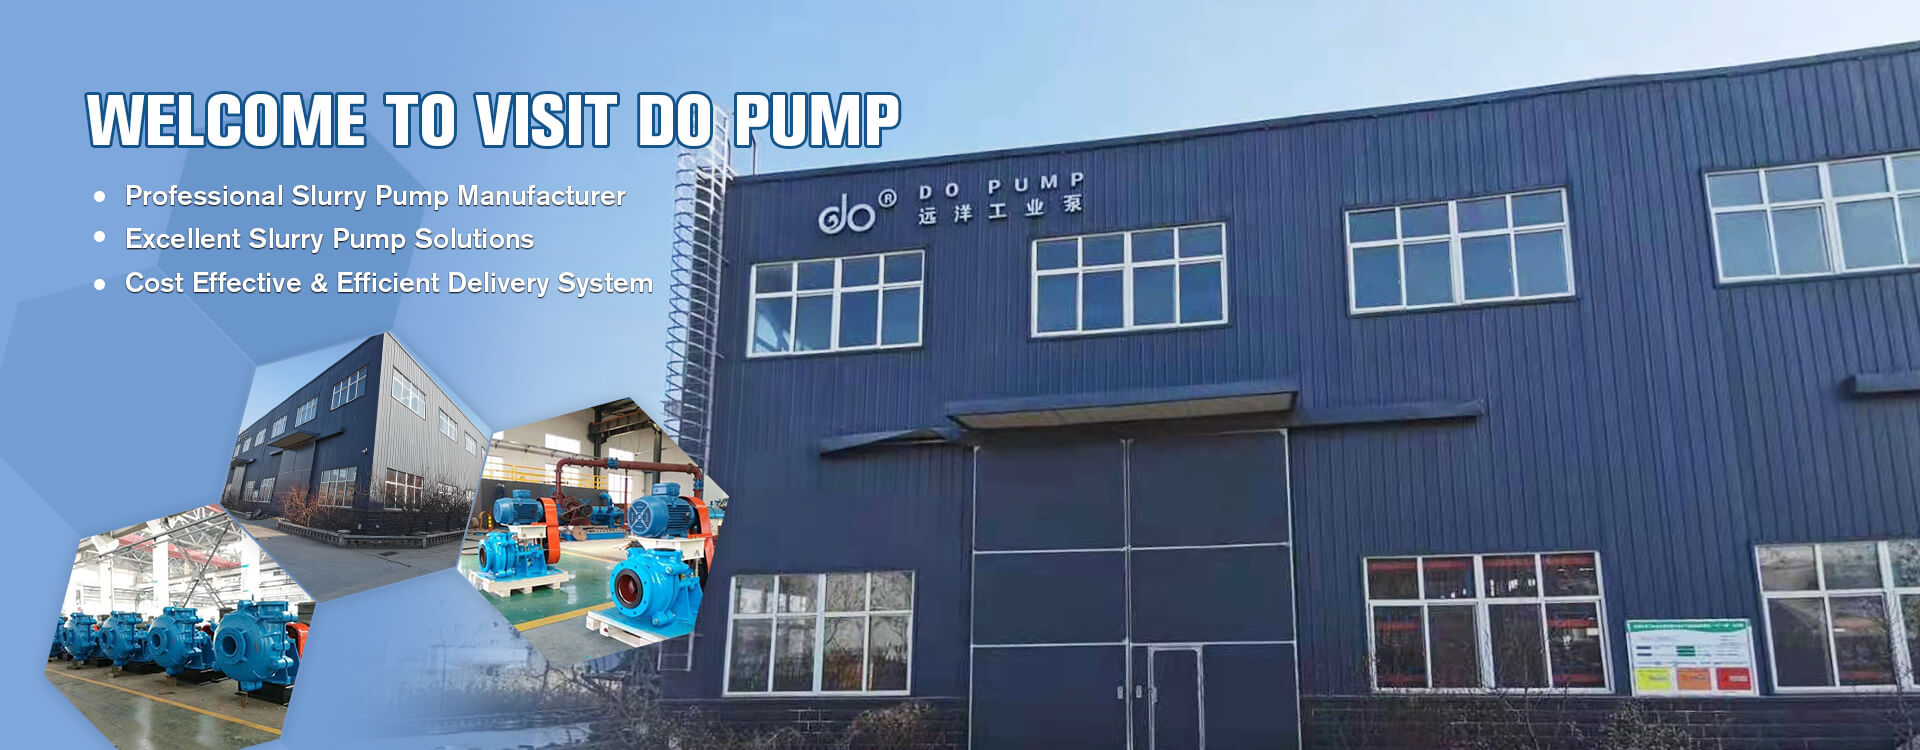 Slurry Pump Manufacturer - Do® Slurry Pump